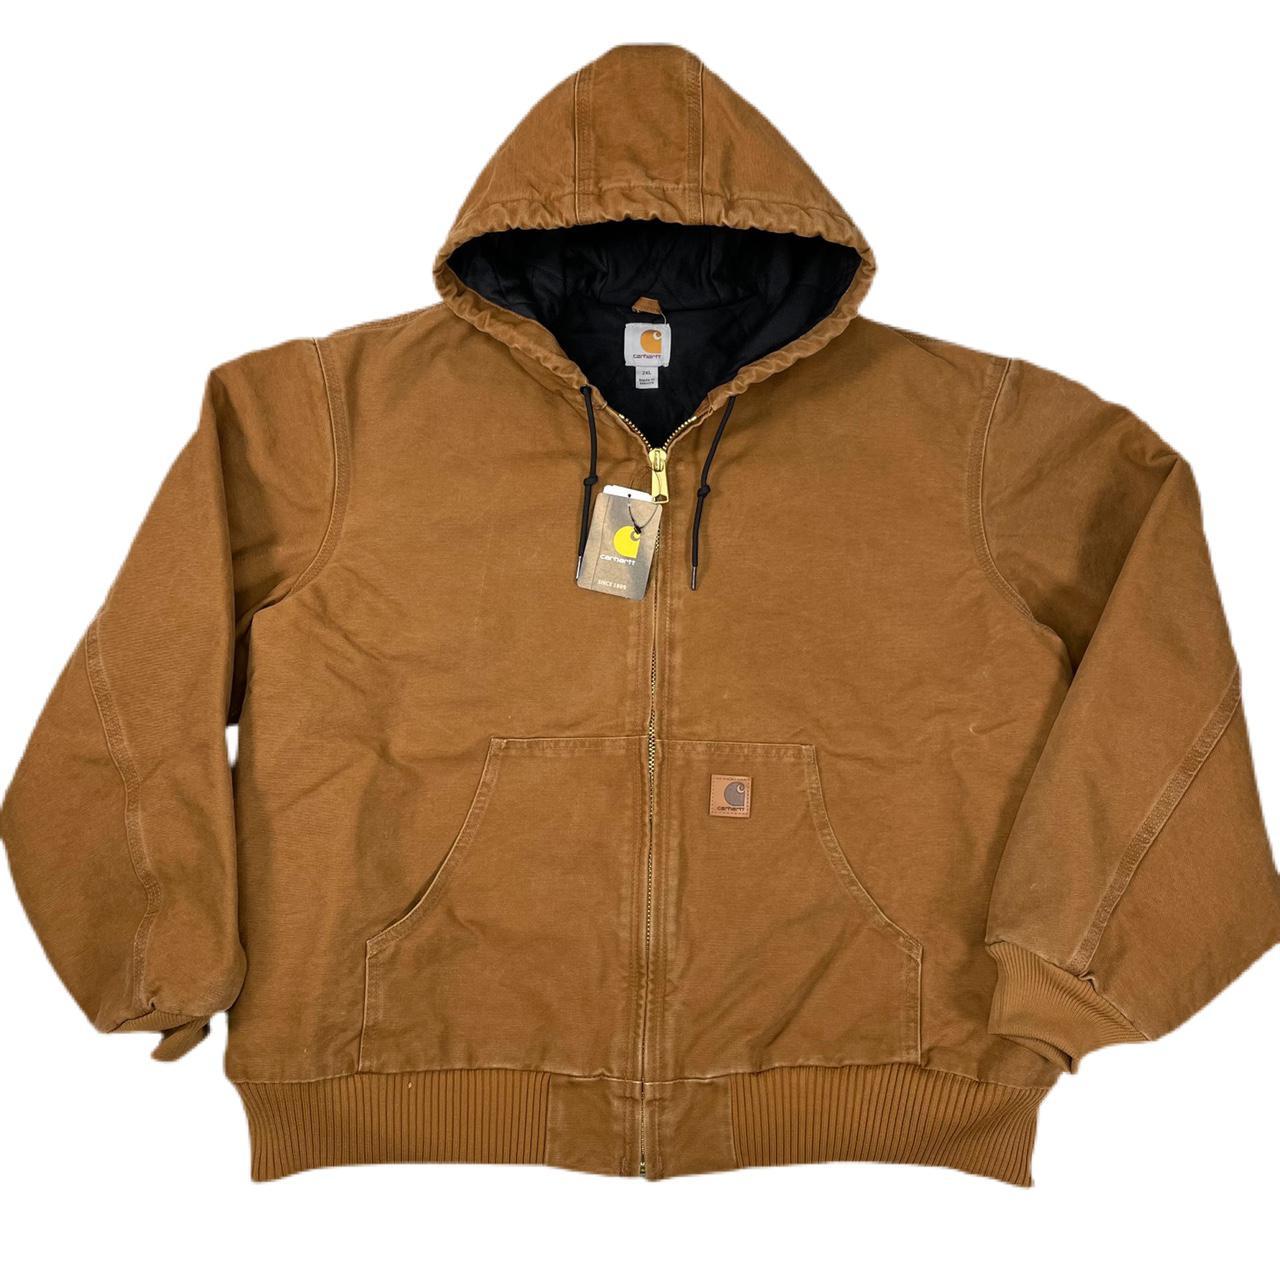 Carhartt J130 brown hoodie work wear jacket • Size... - Depop